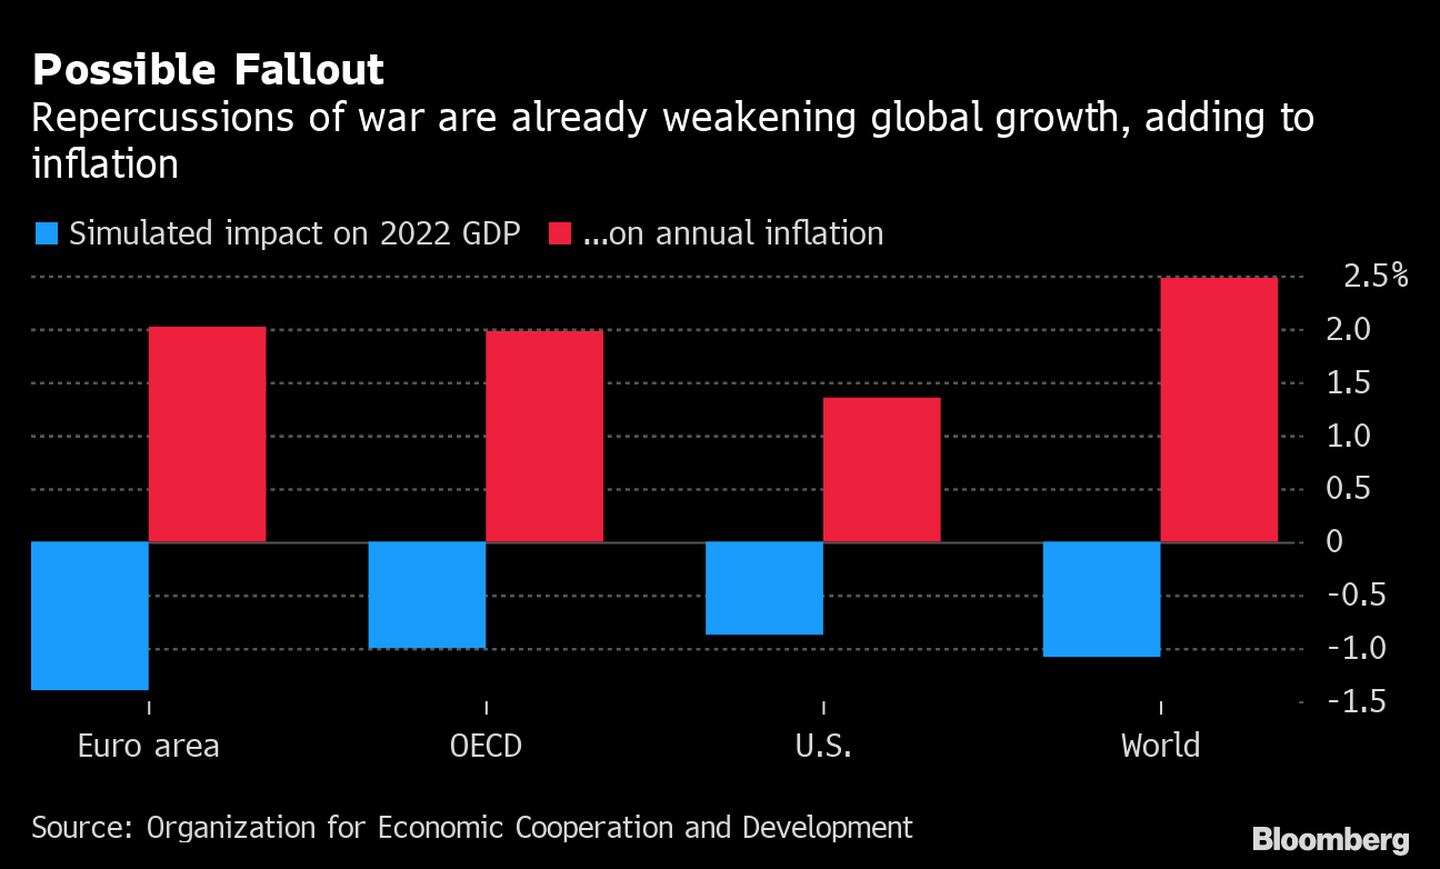 Las repercusiones de la guerra ya están debilitando el crecimiento mundial, aumentando la inflacióndfd